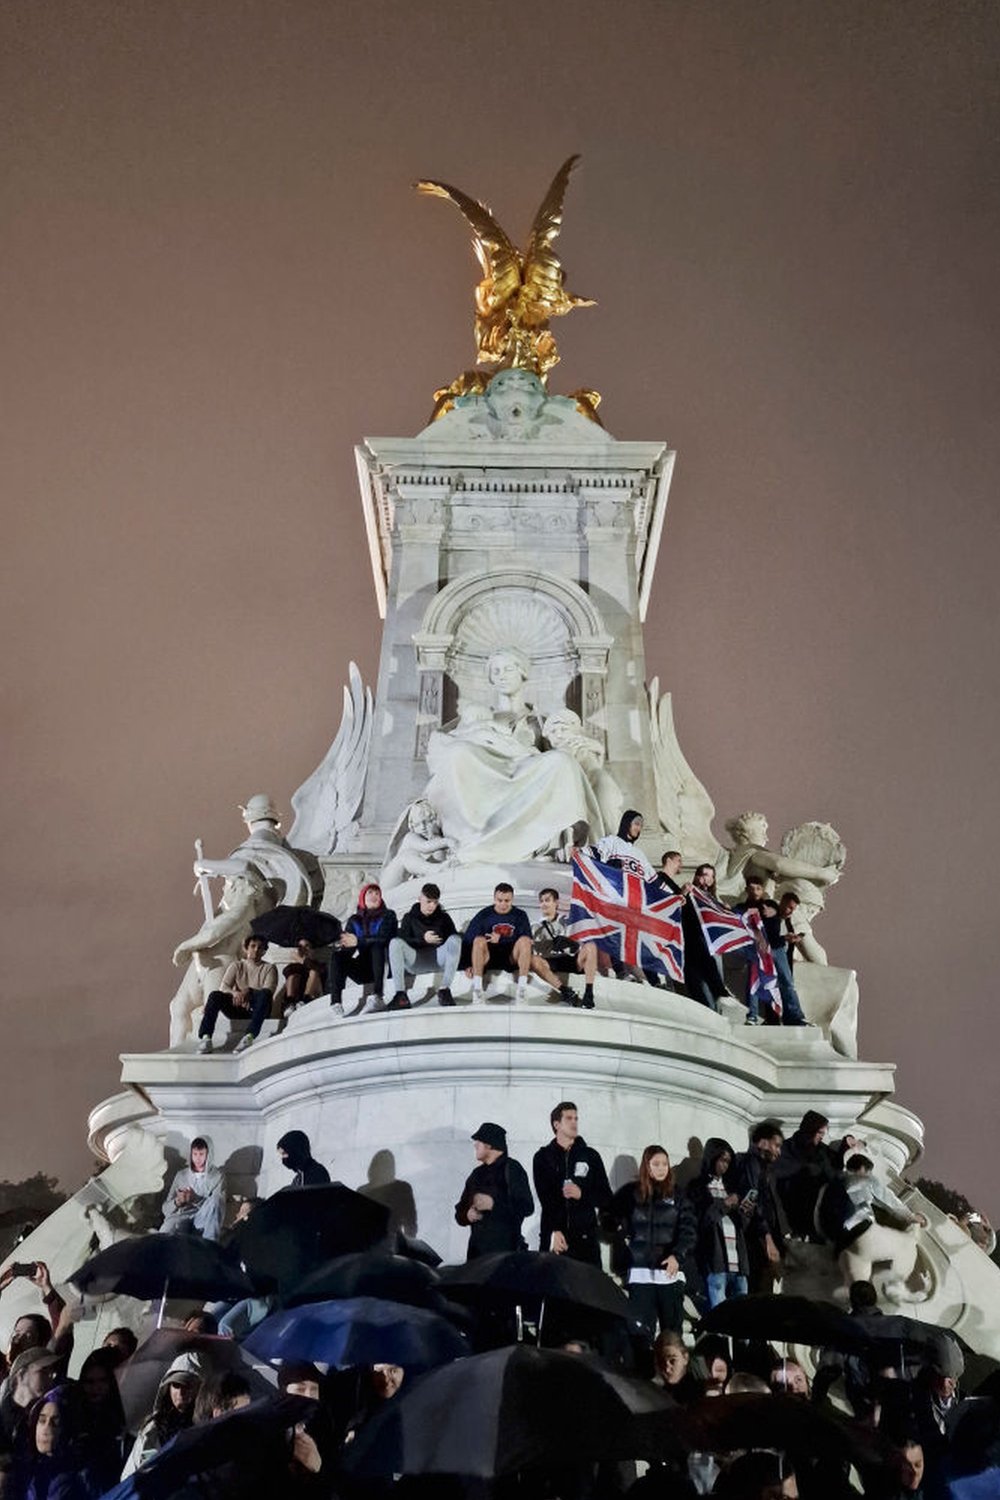 تسلق البعض نصب الملكة فيكتوريا ورفعوا الأعلام البريطانية